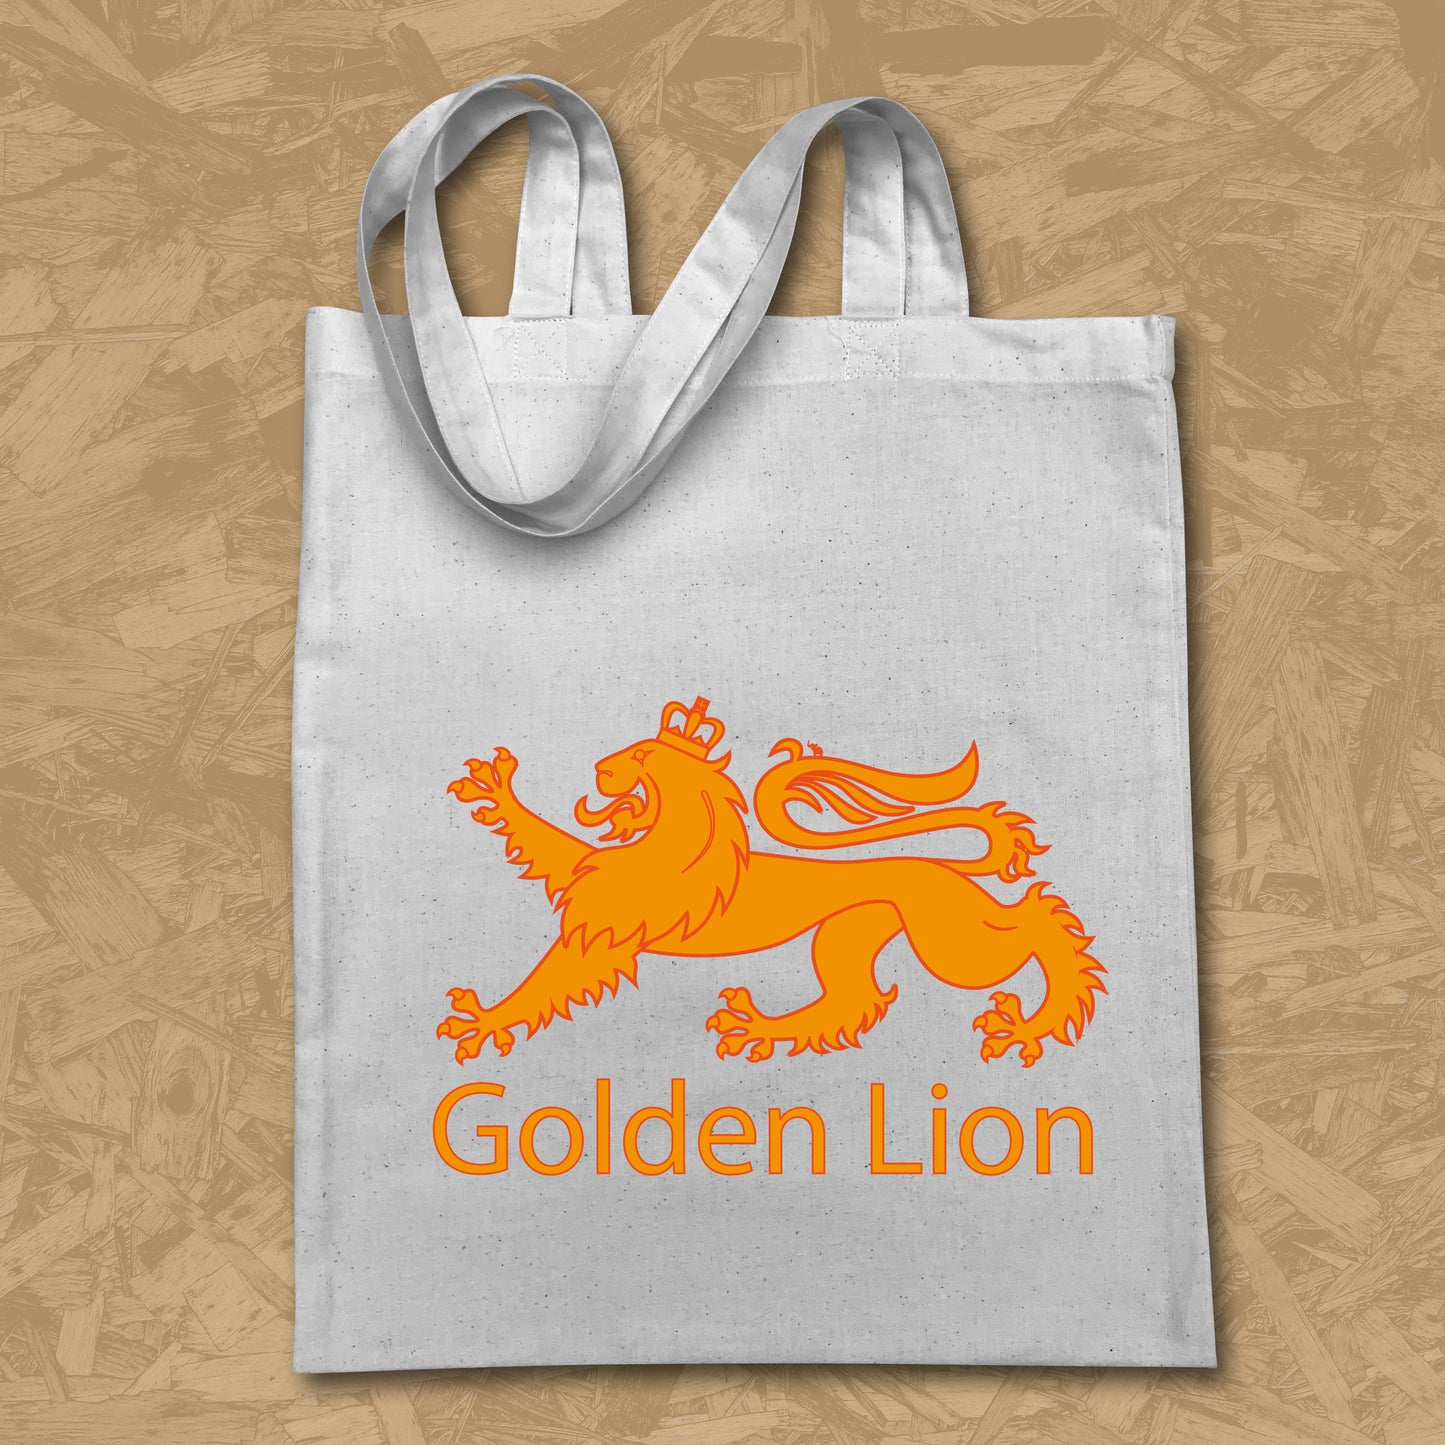 Golden Lion Tote Bag